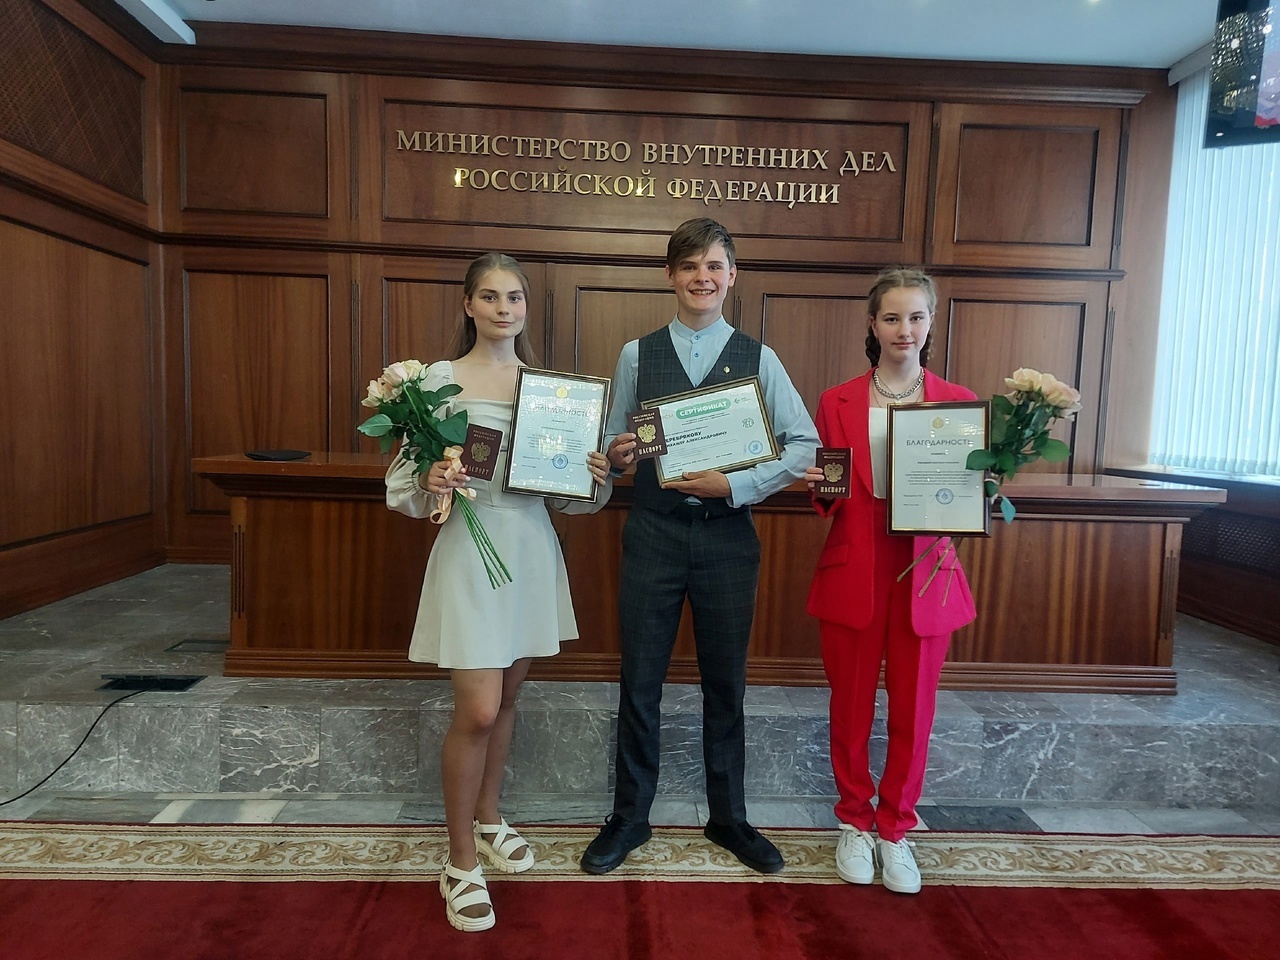 Паспорта трое юных костромичей получили в Москве из рук замминистра внутренних дел